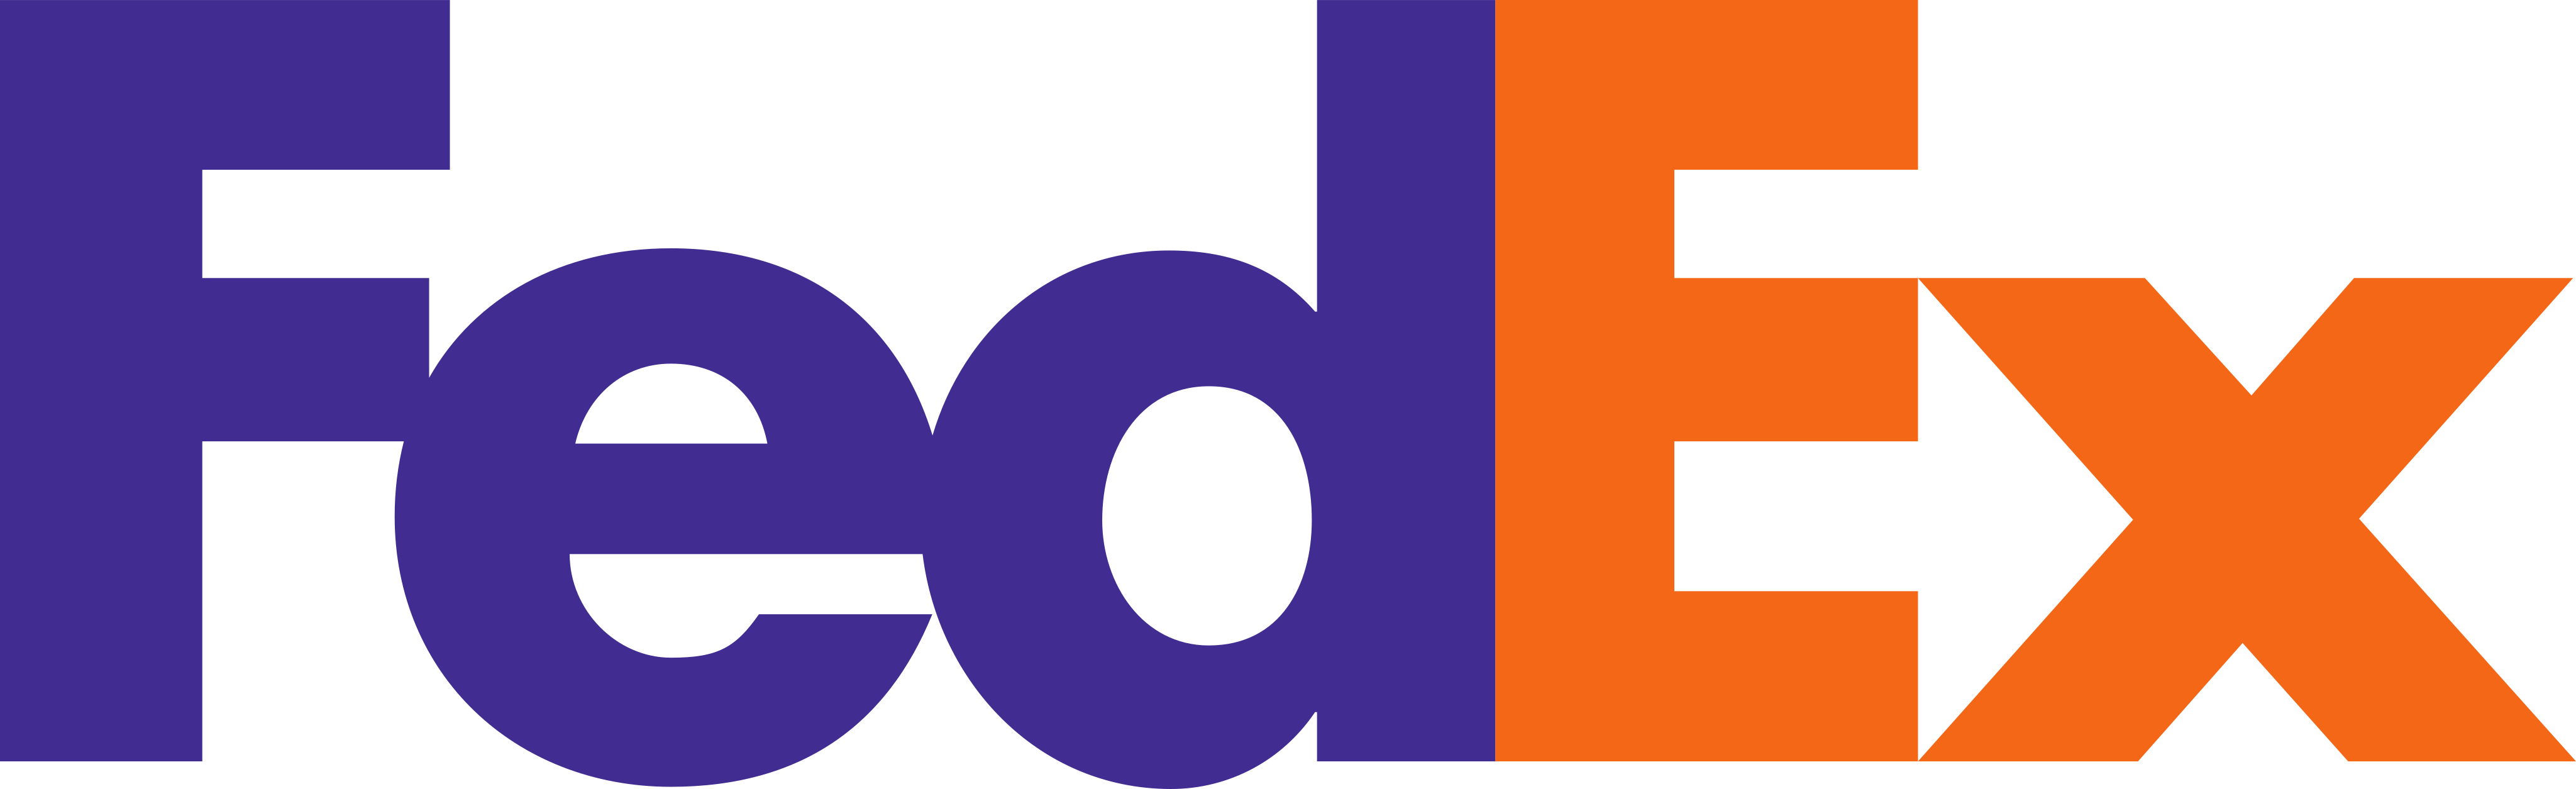 Logo de FedEx SVG